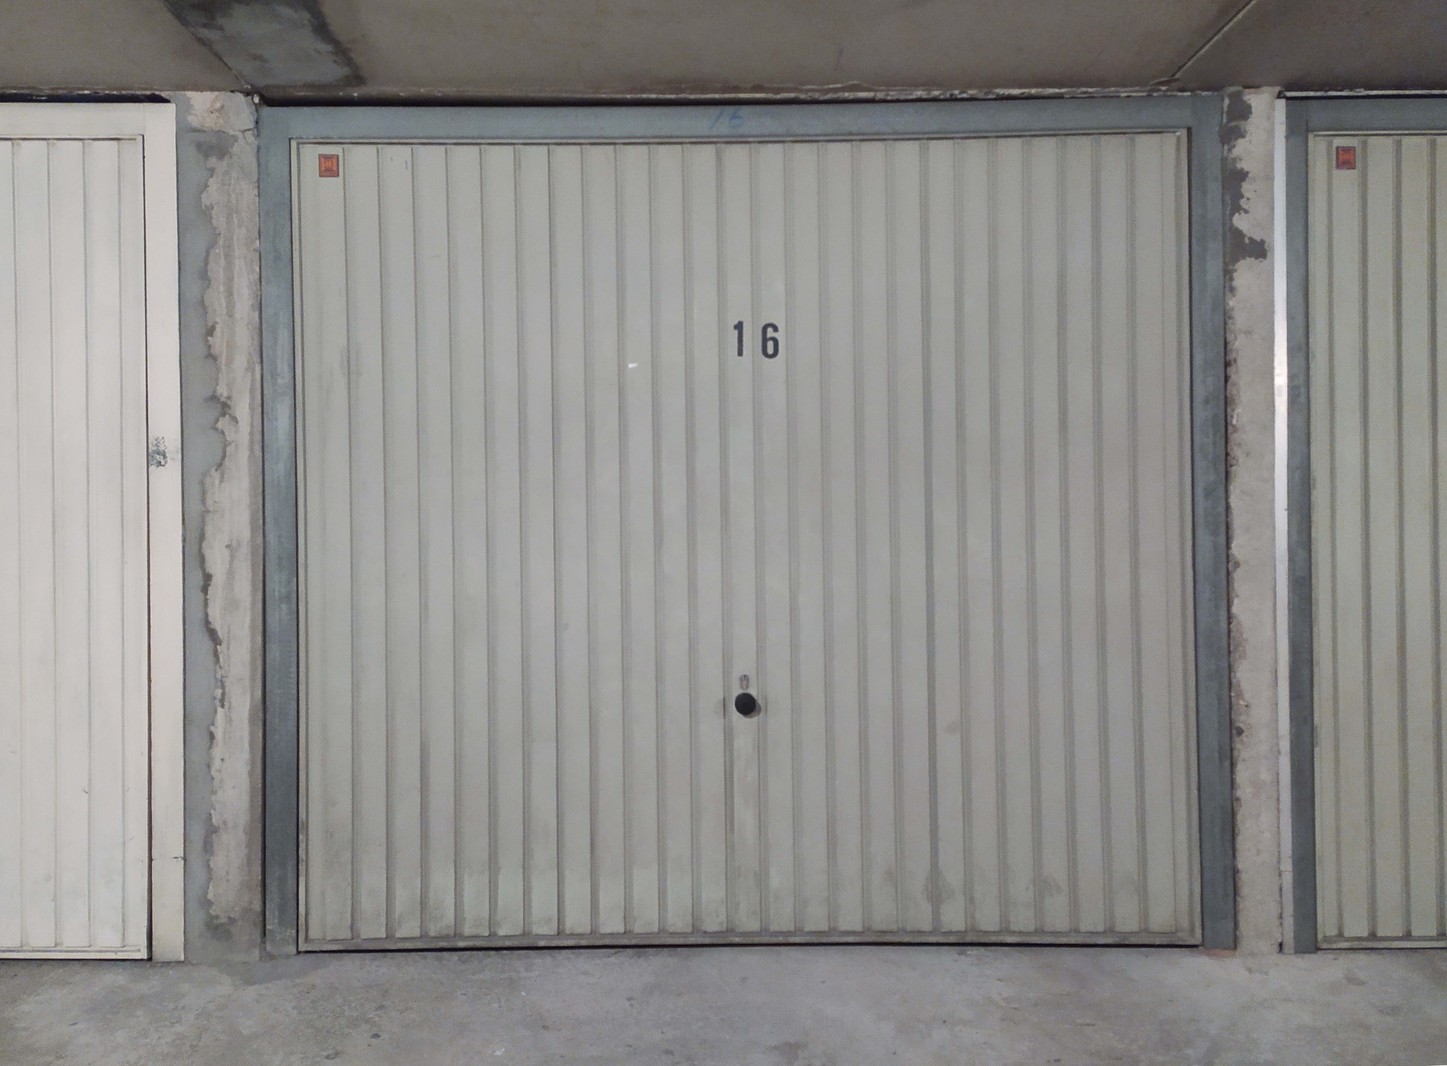 Ruime, vlot toegankelijke ondergrondse garagebox